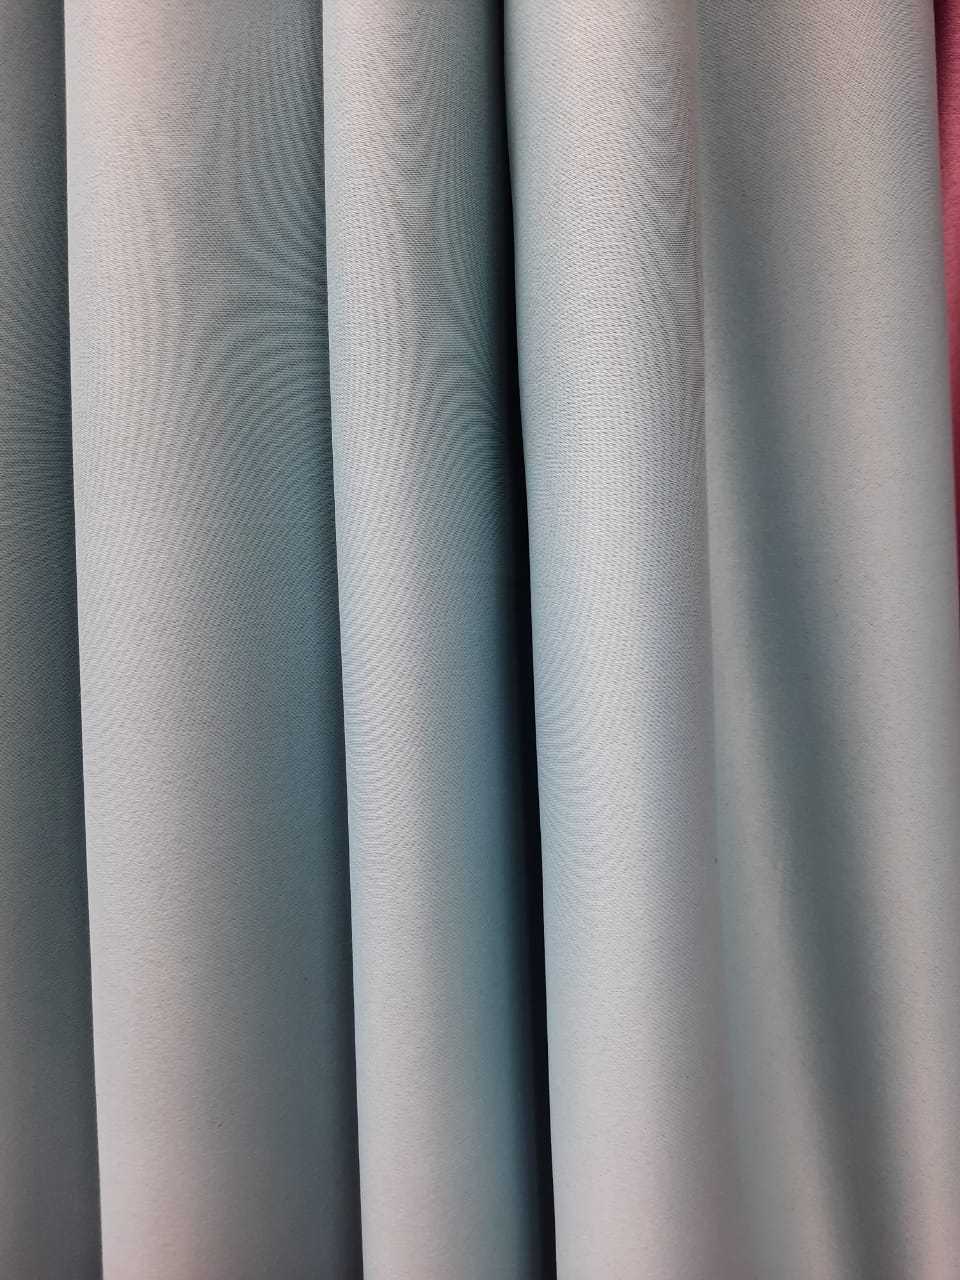 Как правильно выбрать вид ткани для изделия?